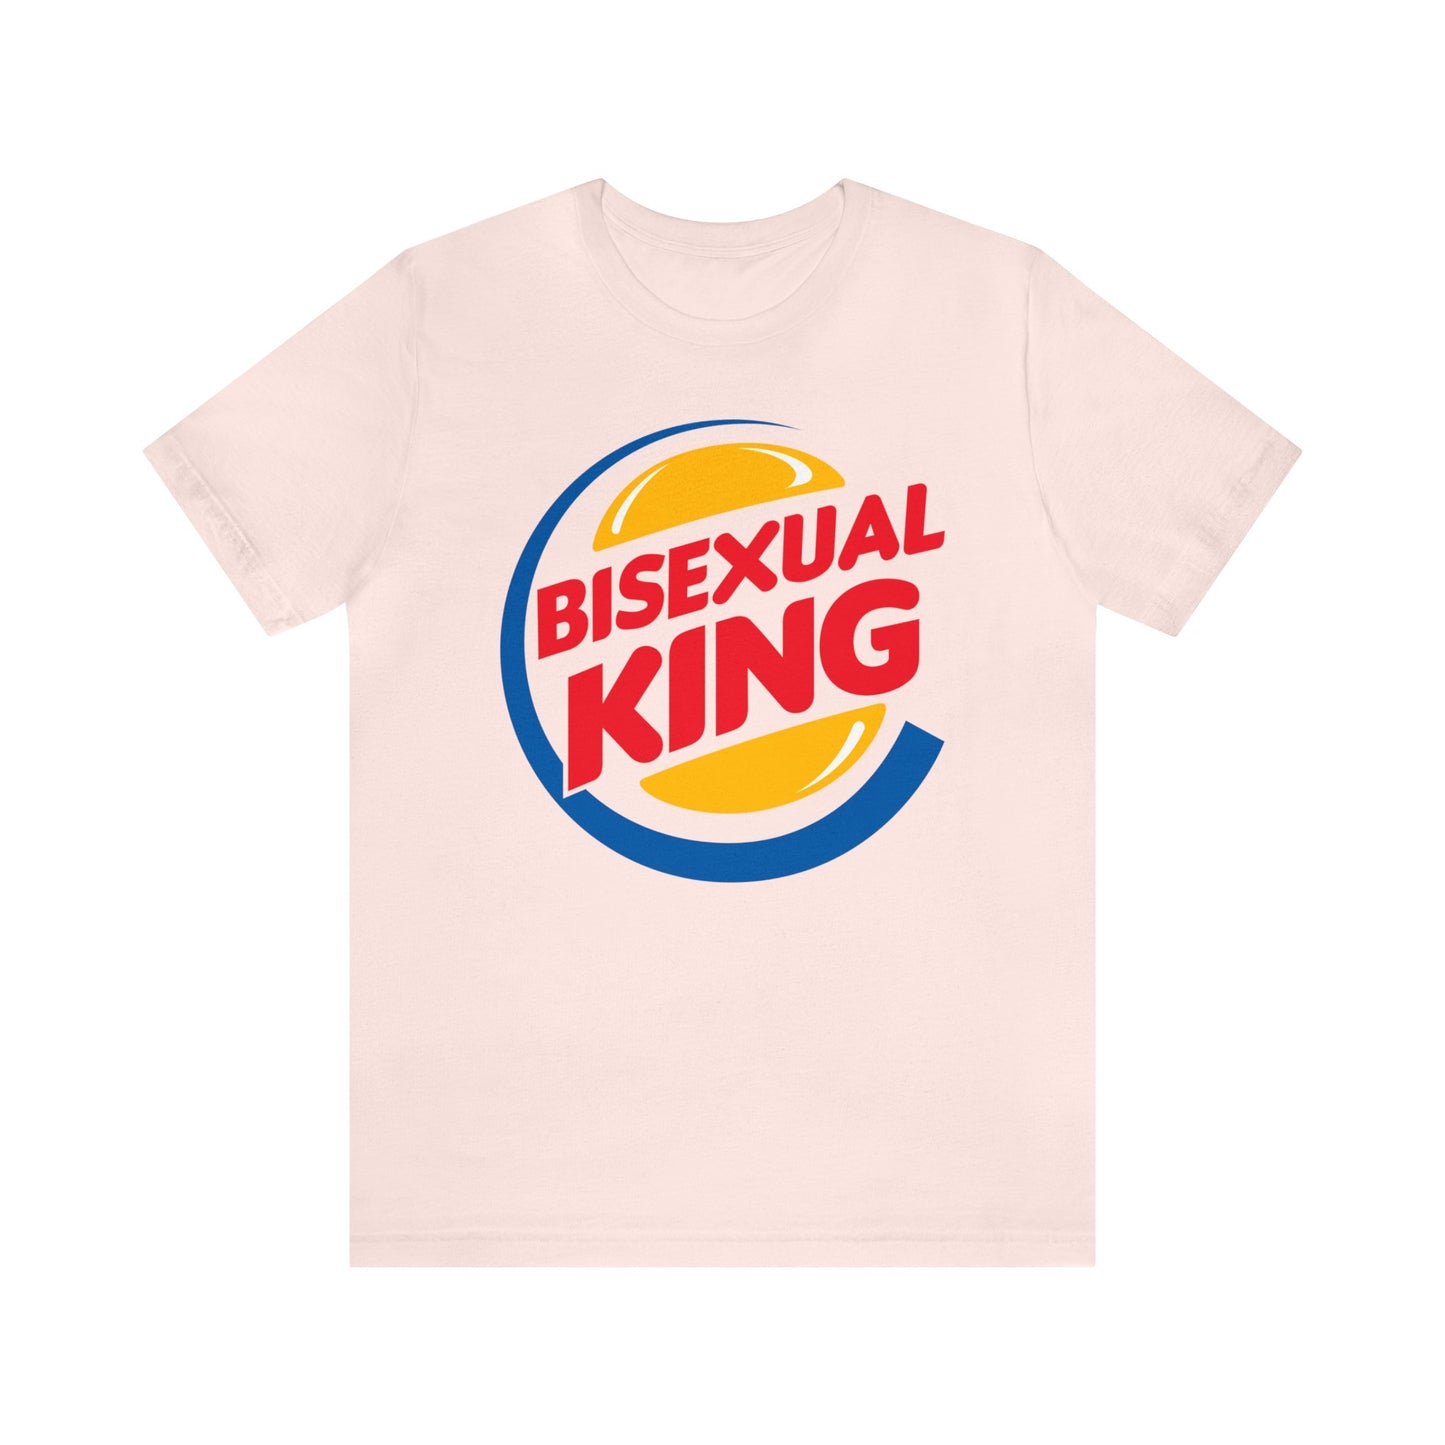 Bisexual King Unisex t-shirt